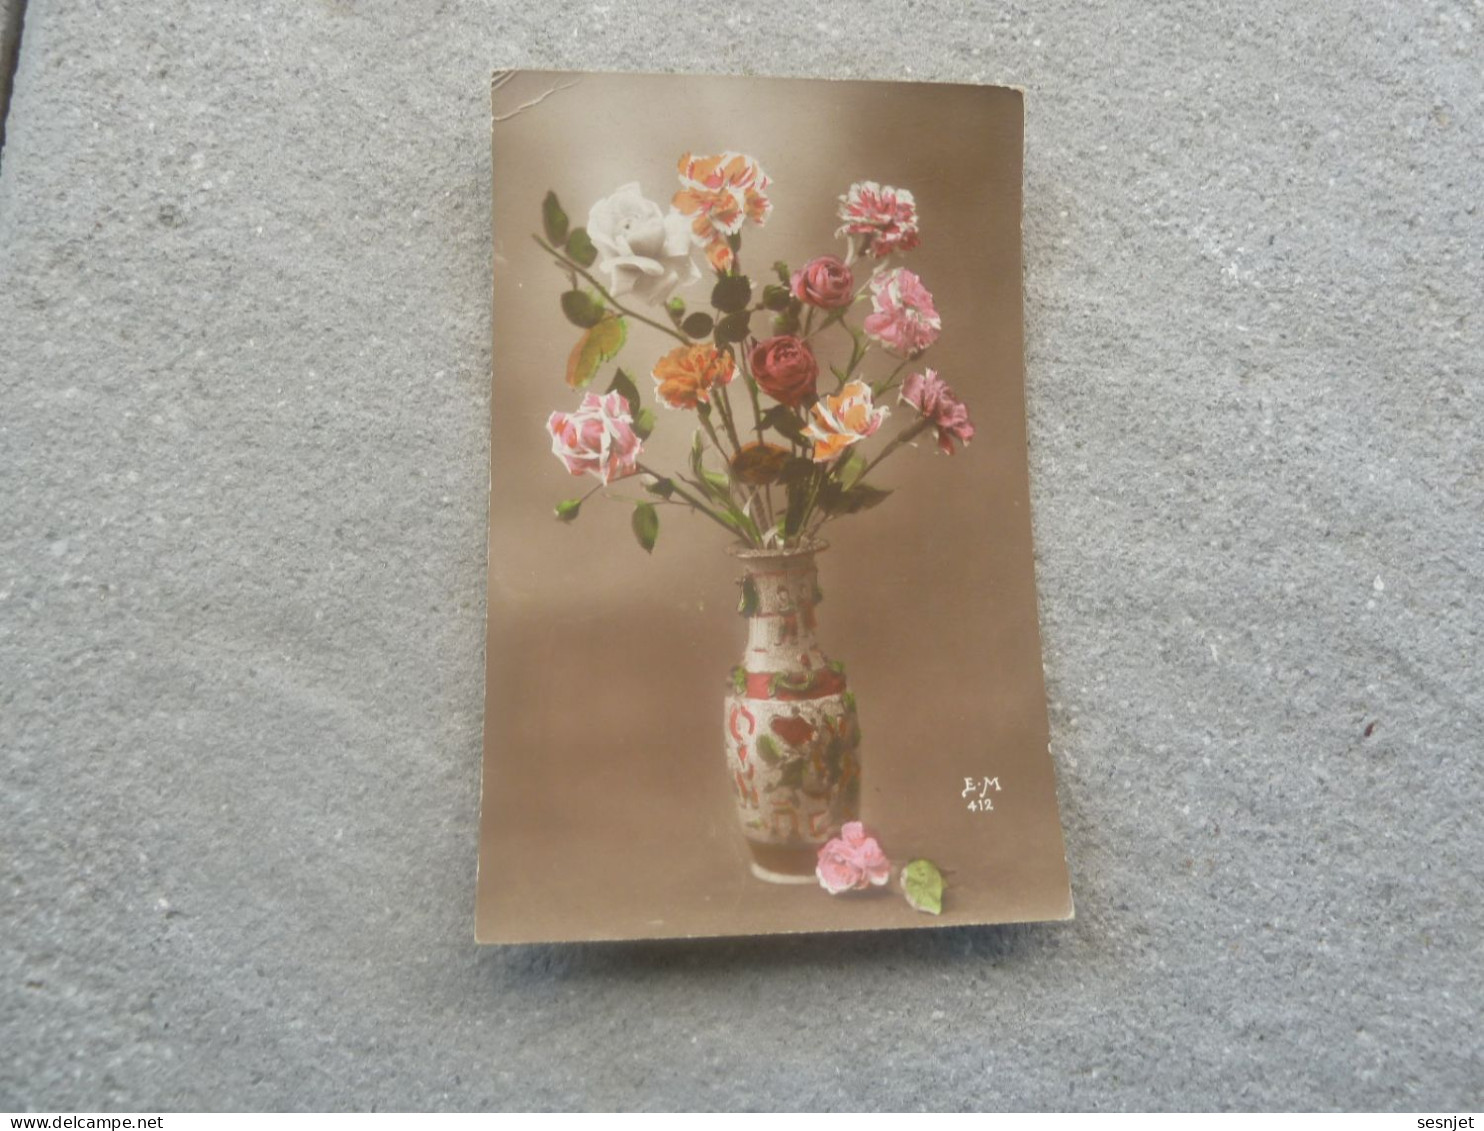 Roses En Vase - 412 - Editions E.m. - Année Non Définie - - Bloemen